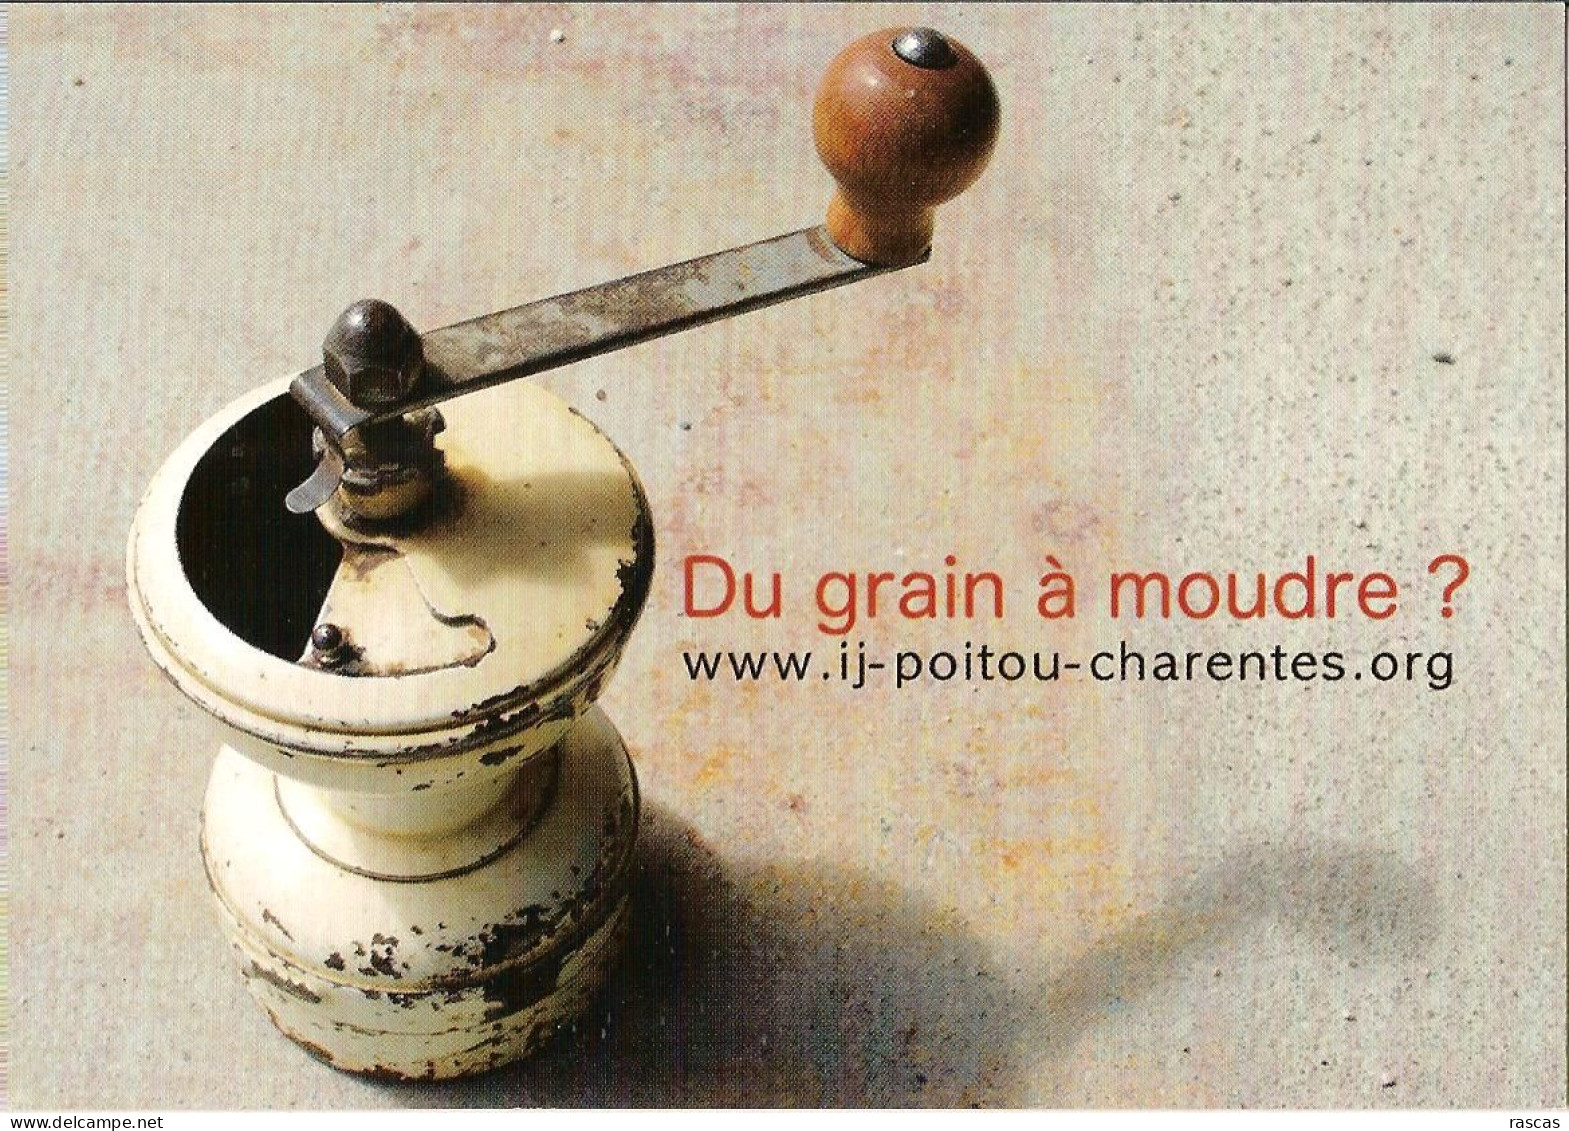 CPM - INFORMATION JEUNESSE EN POITOU CHARENTES SUR IJ-POITOU-CHARENTES.ORG - DU GRAIN A MOUDRE ? - Poitou-Charentes